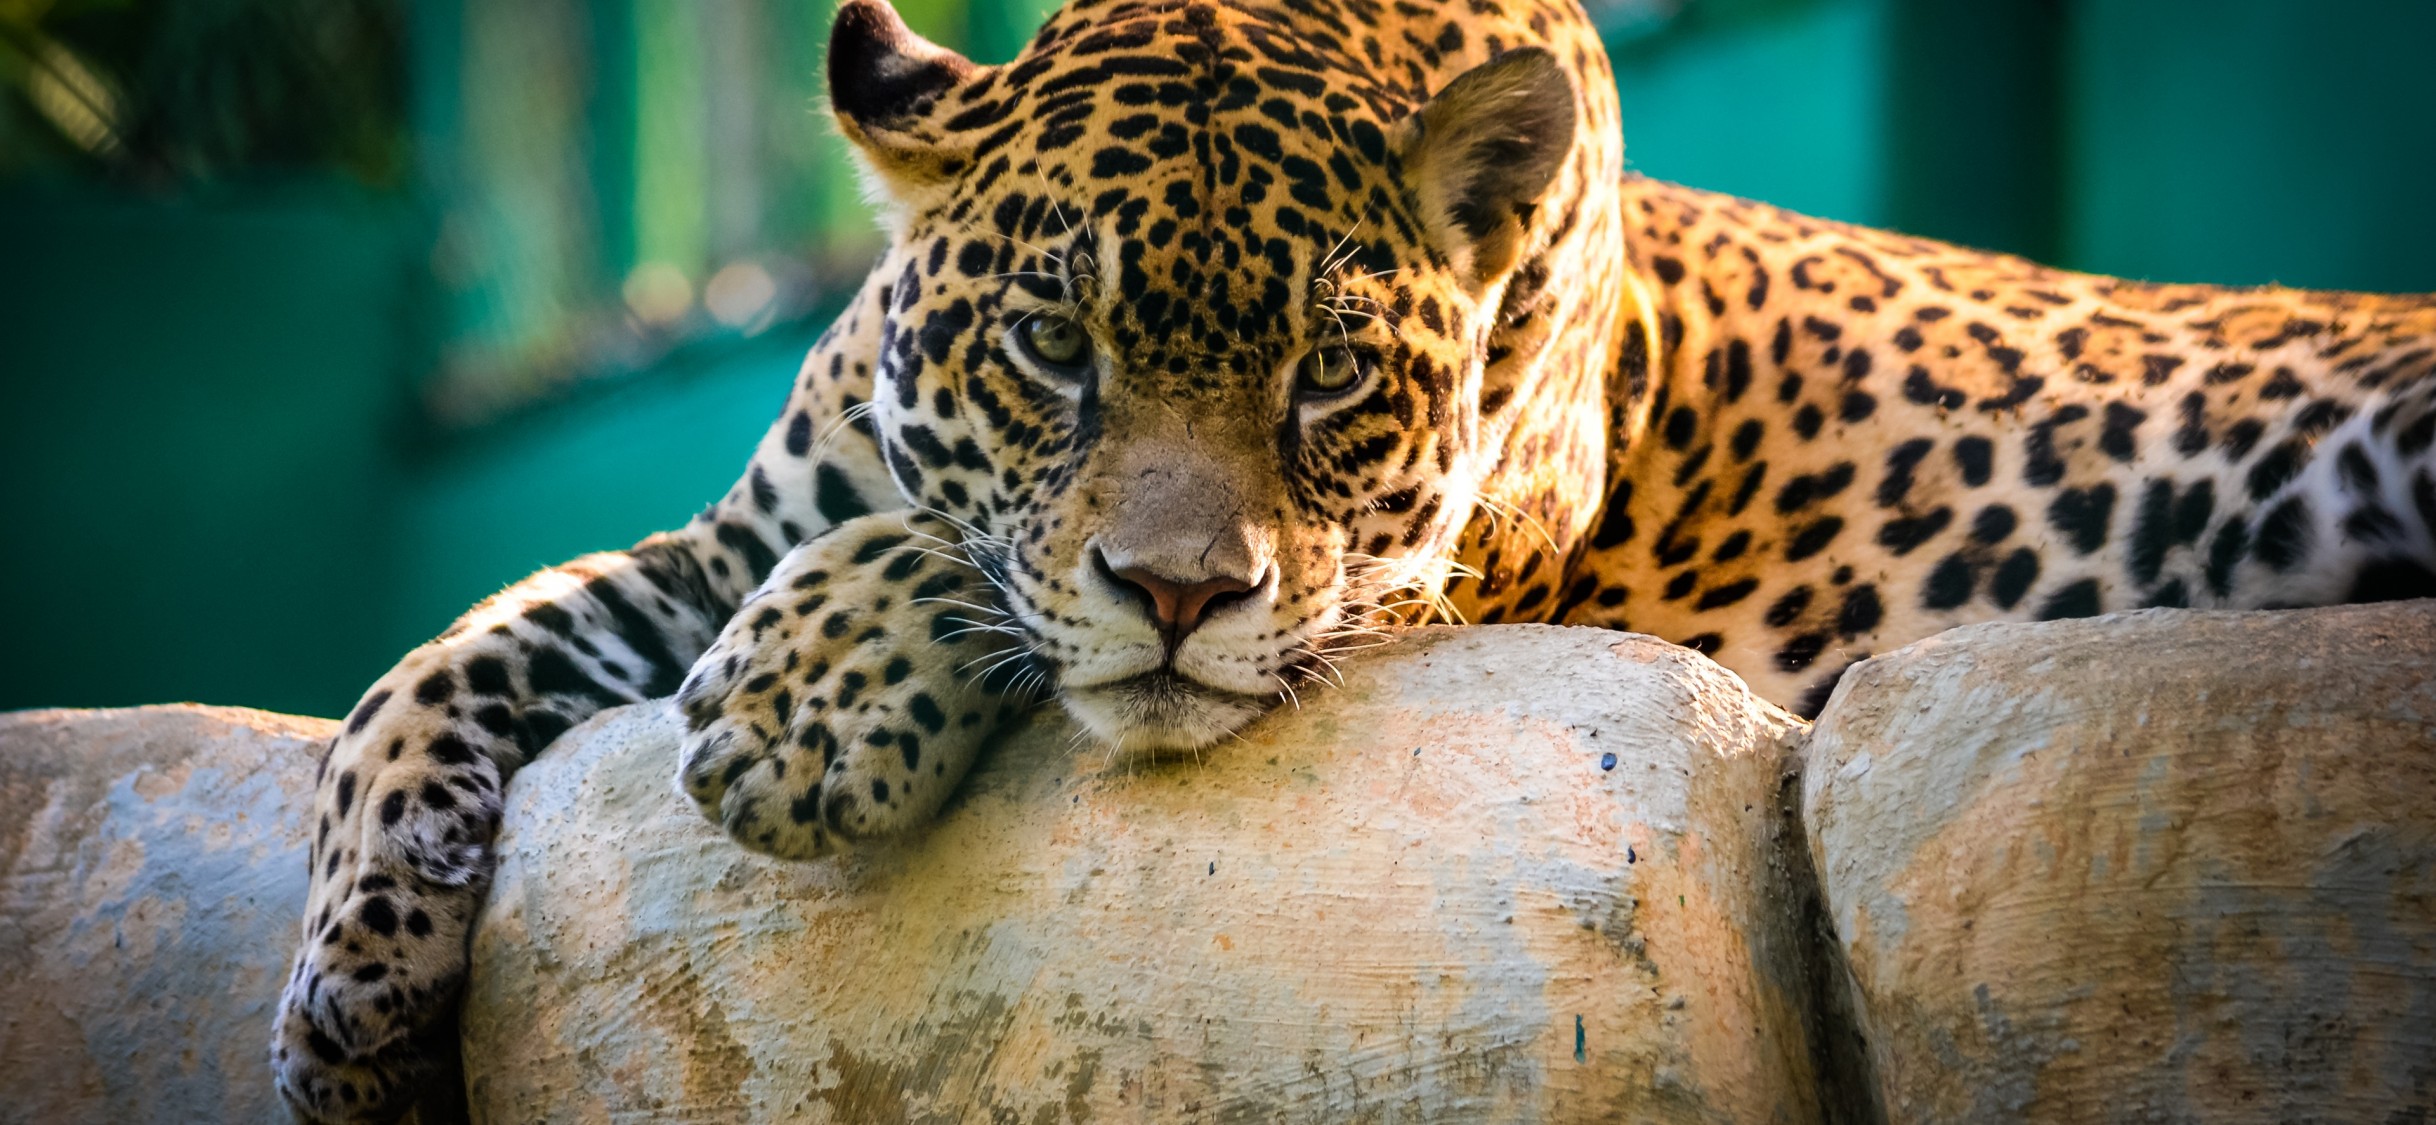 Jaguar Animal Wallpaper for Desktop and Mobiles iPhone X - HD Wallpaper -  